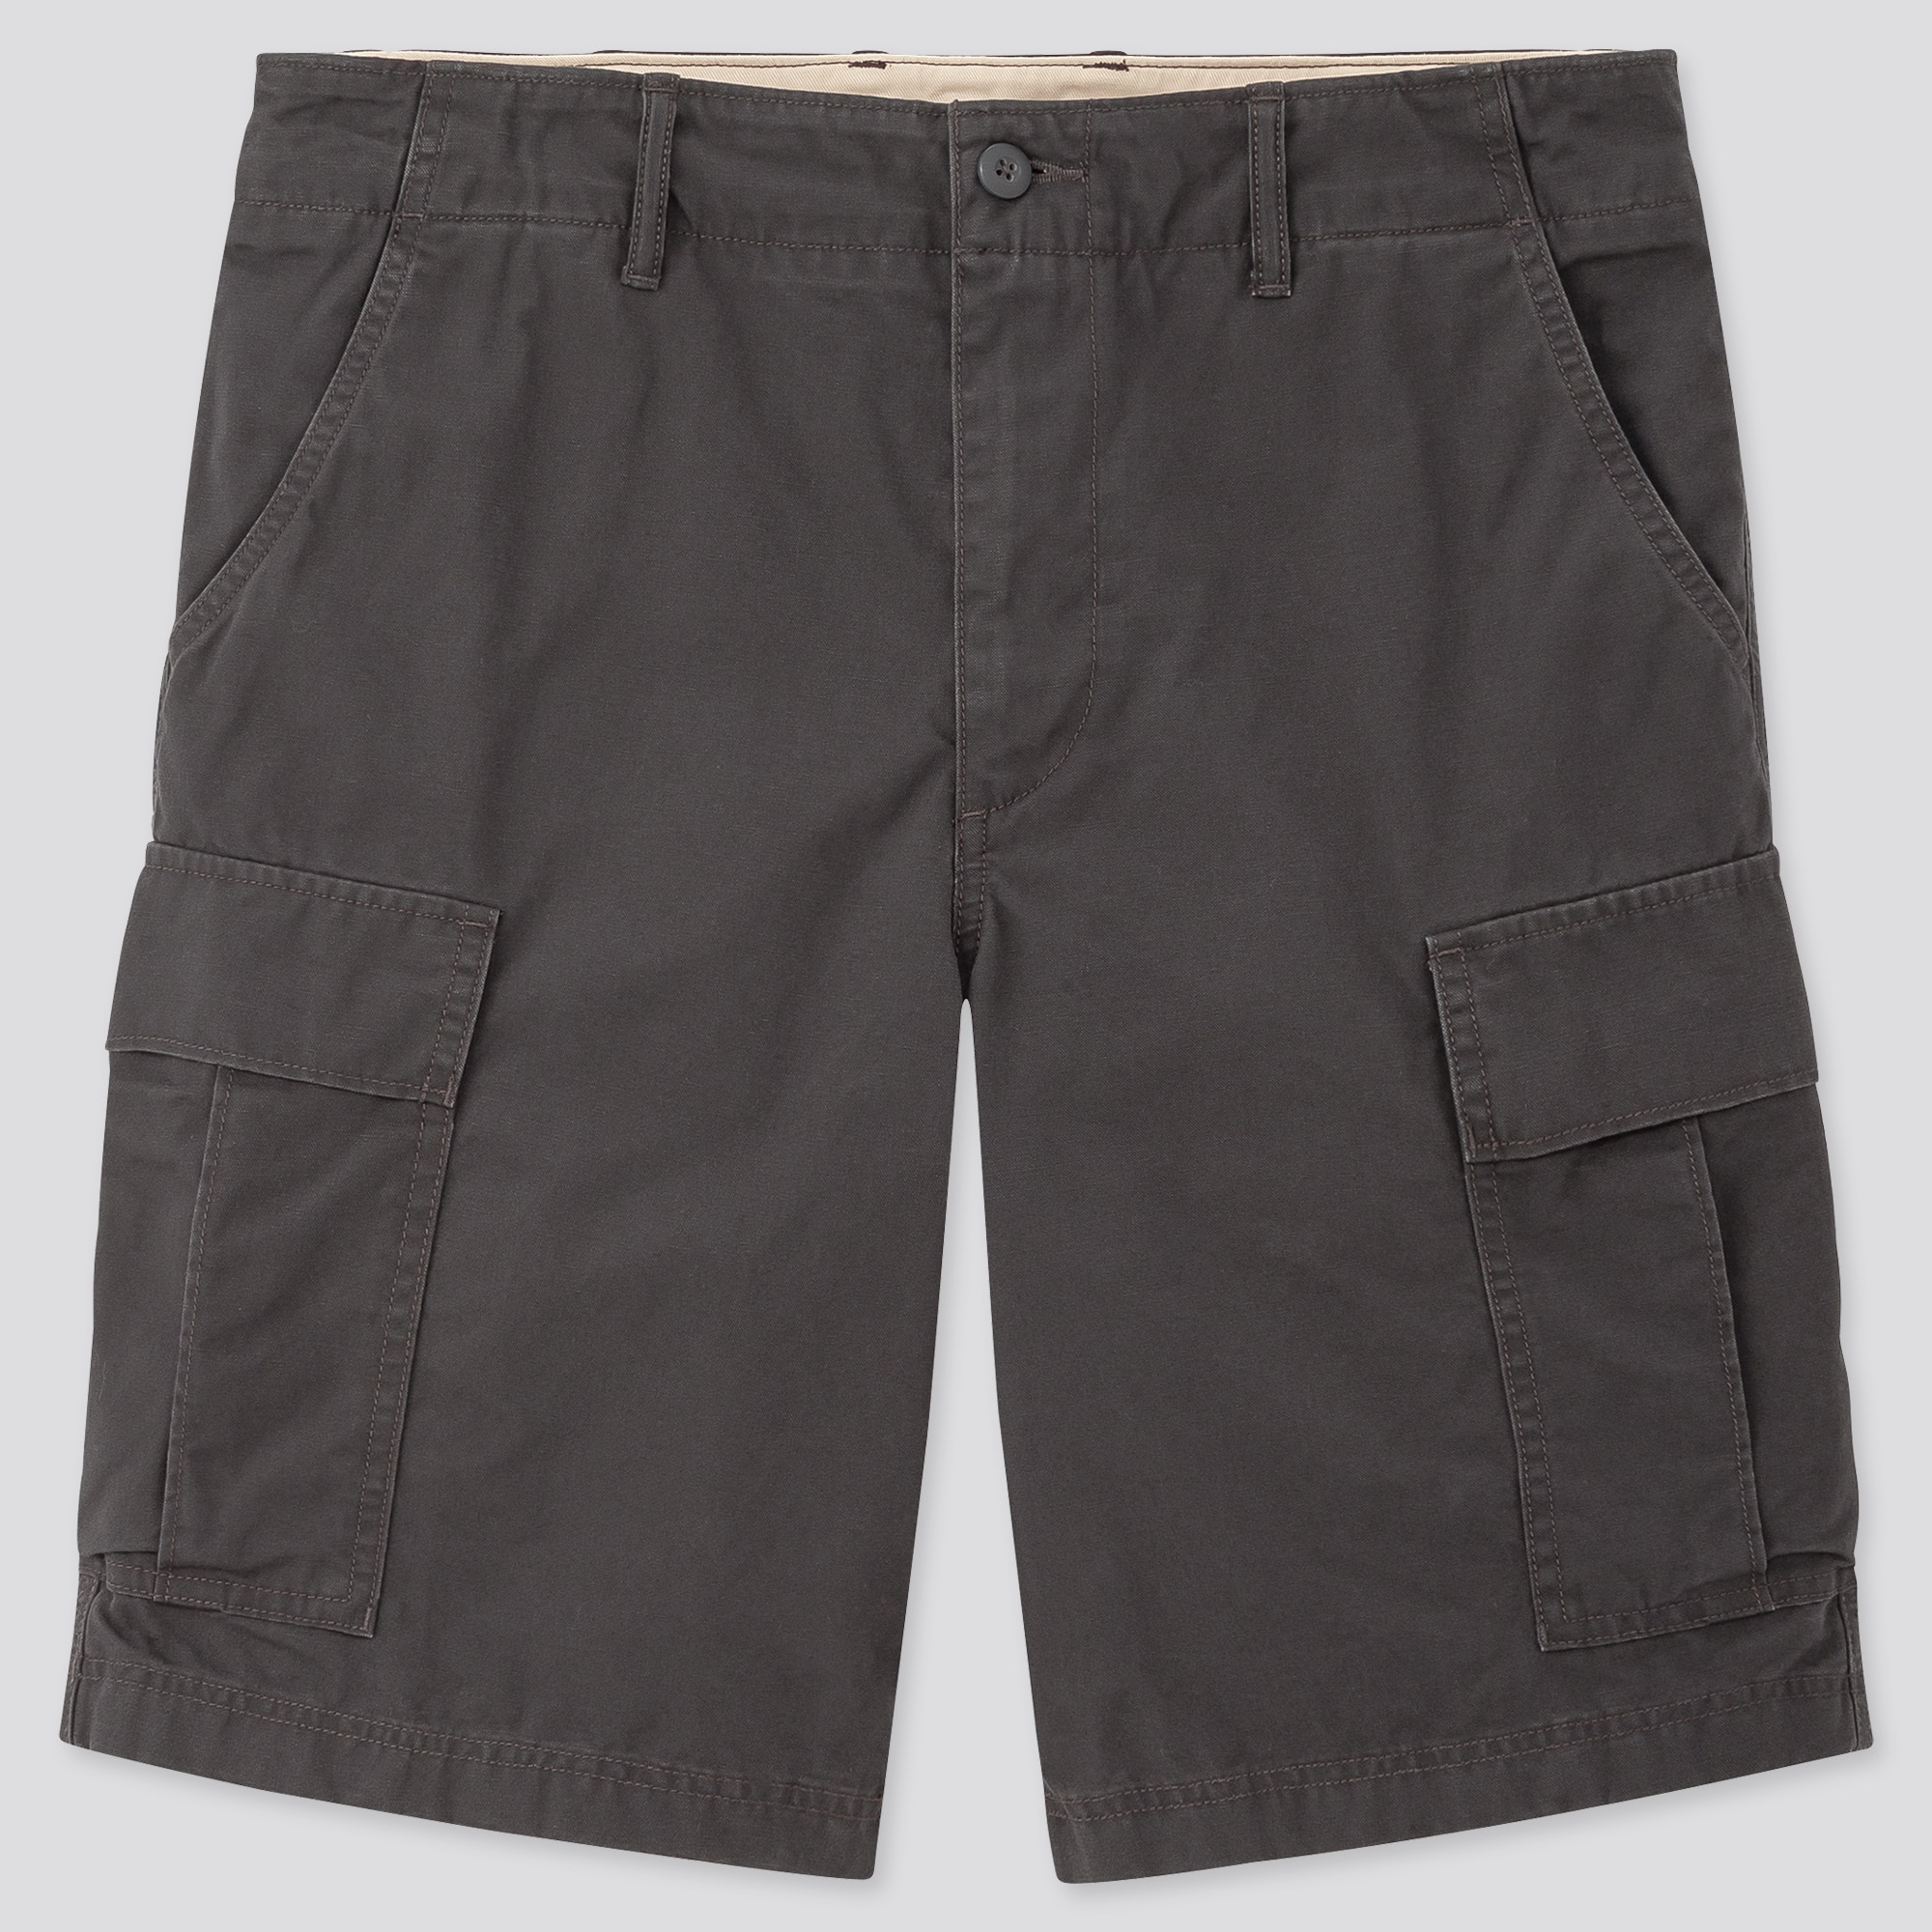 uniqlo cargo shorts